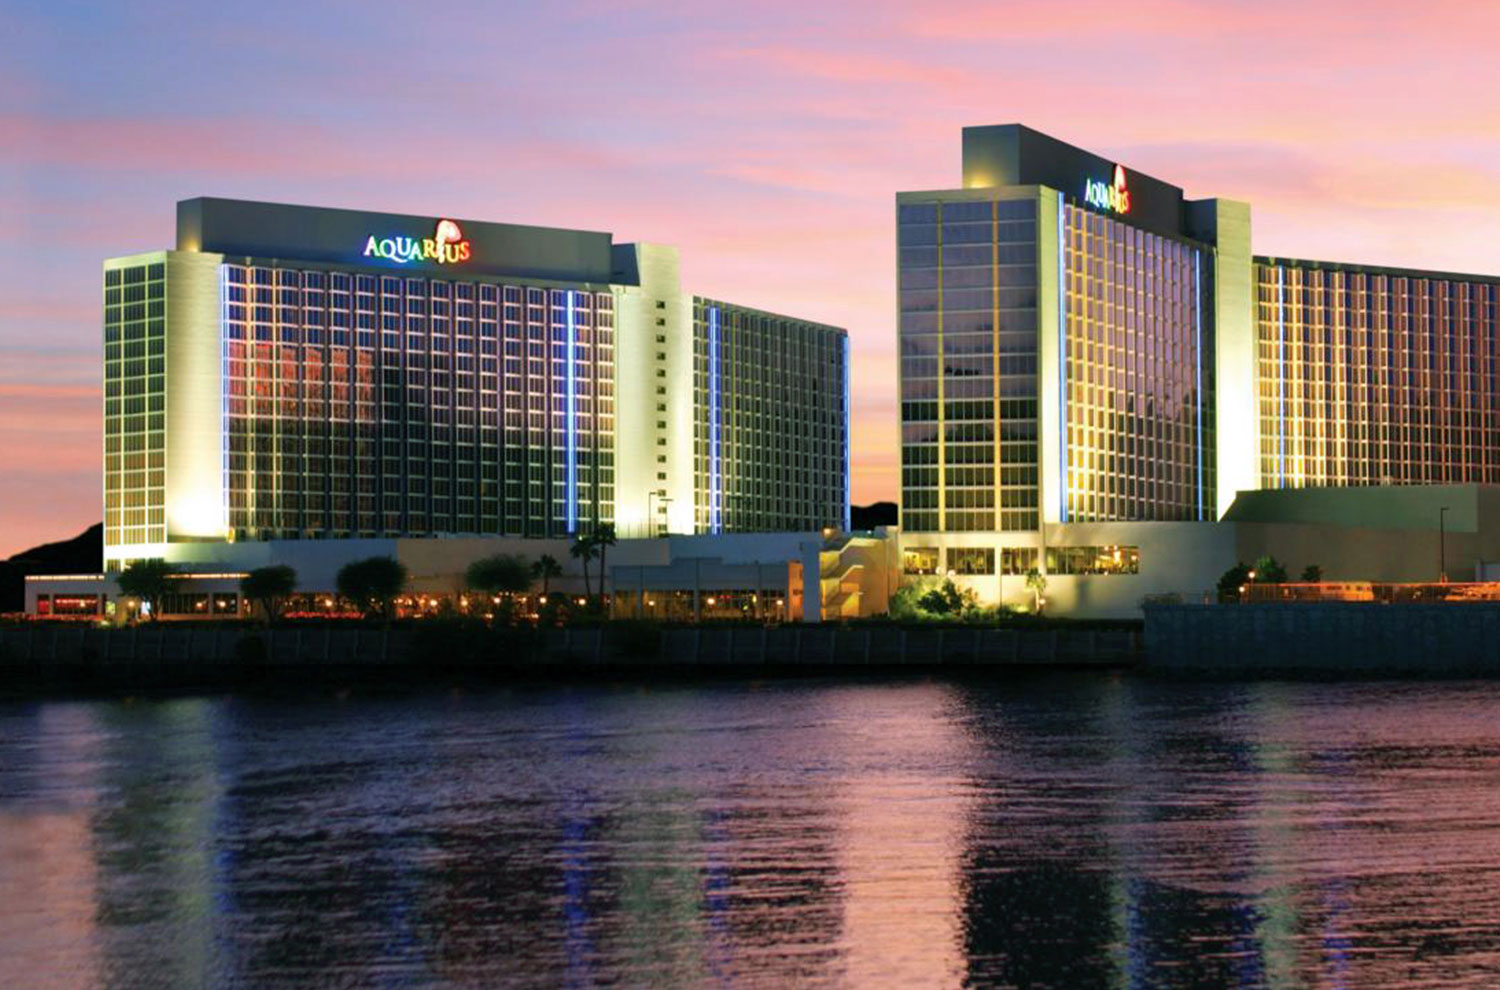 Exterior view of Aquarius casino resort